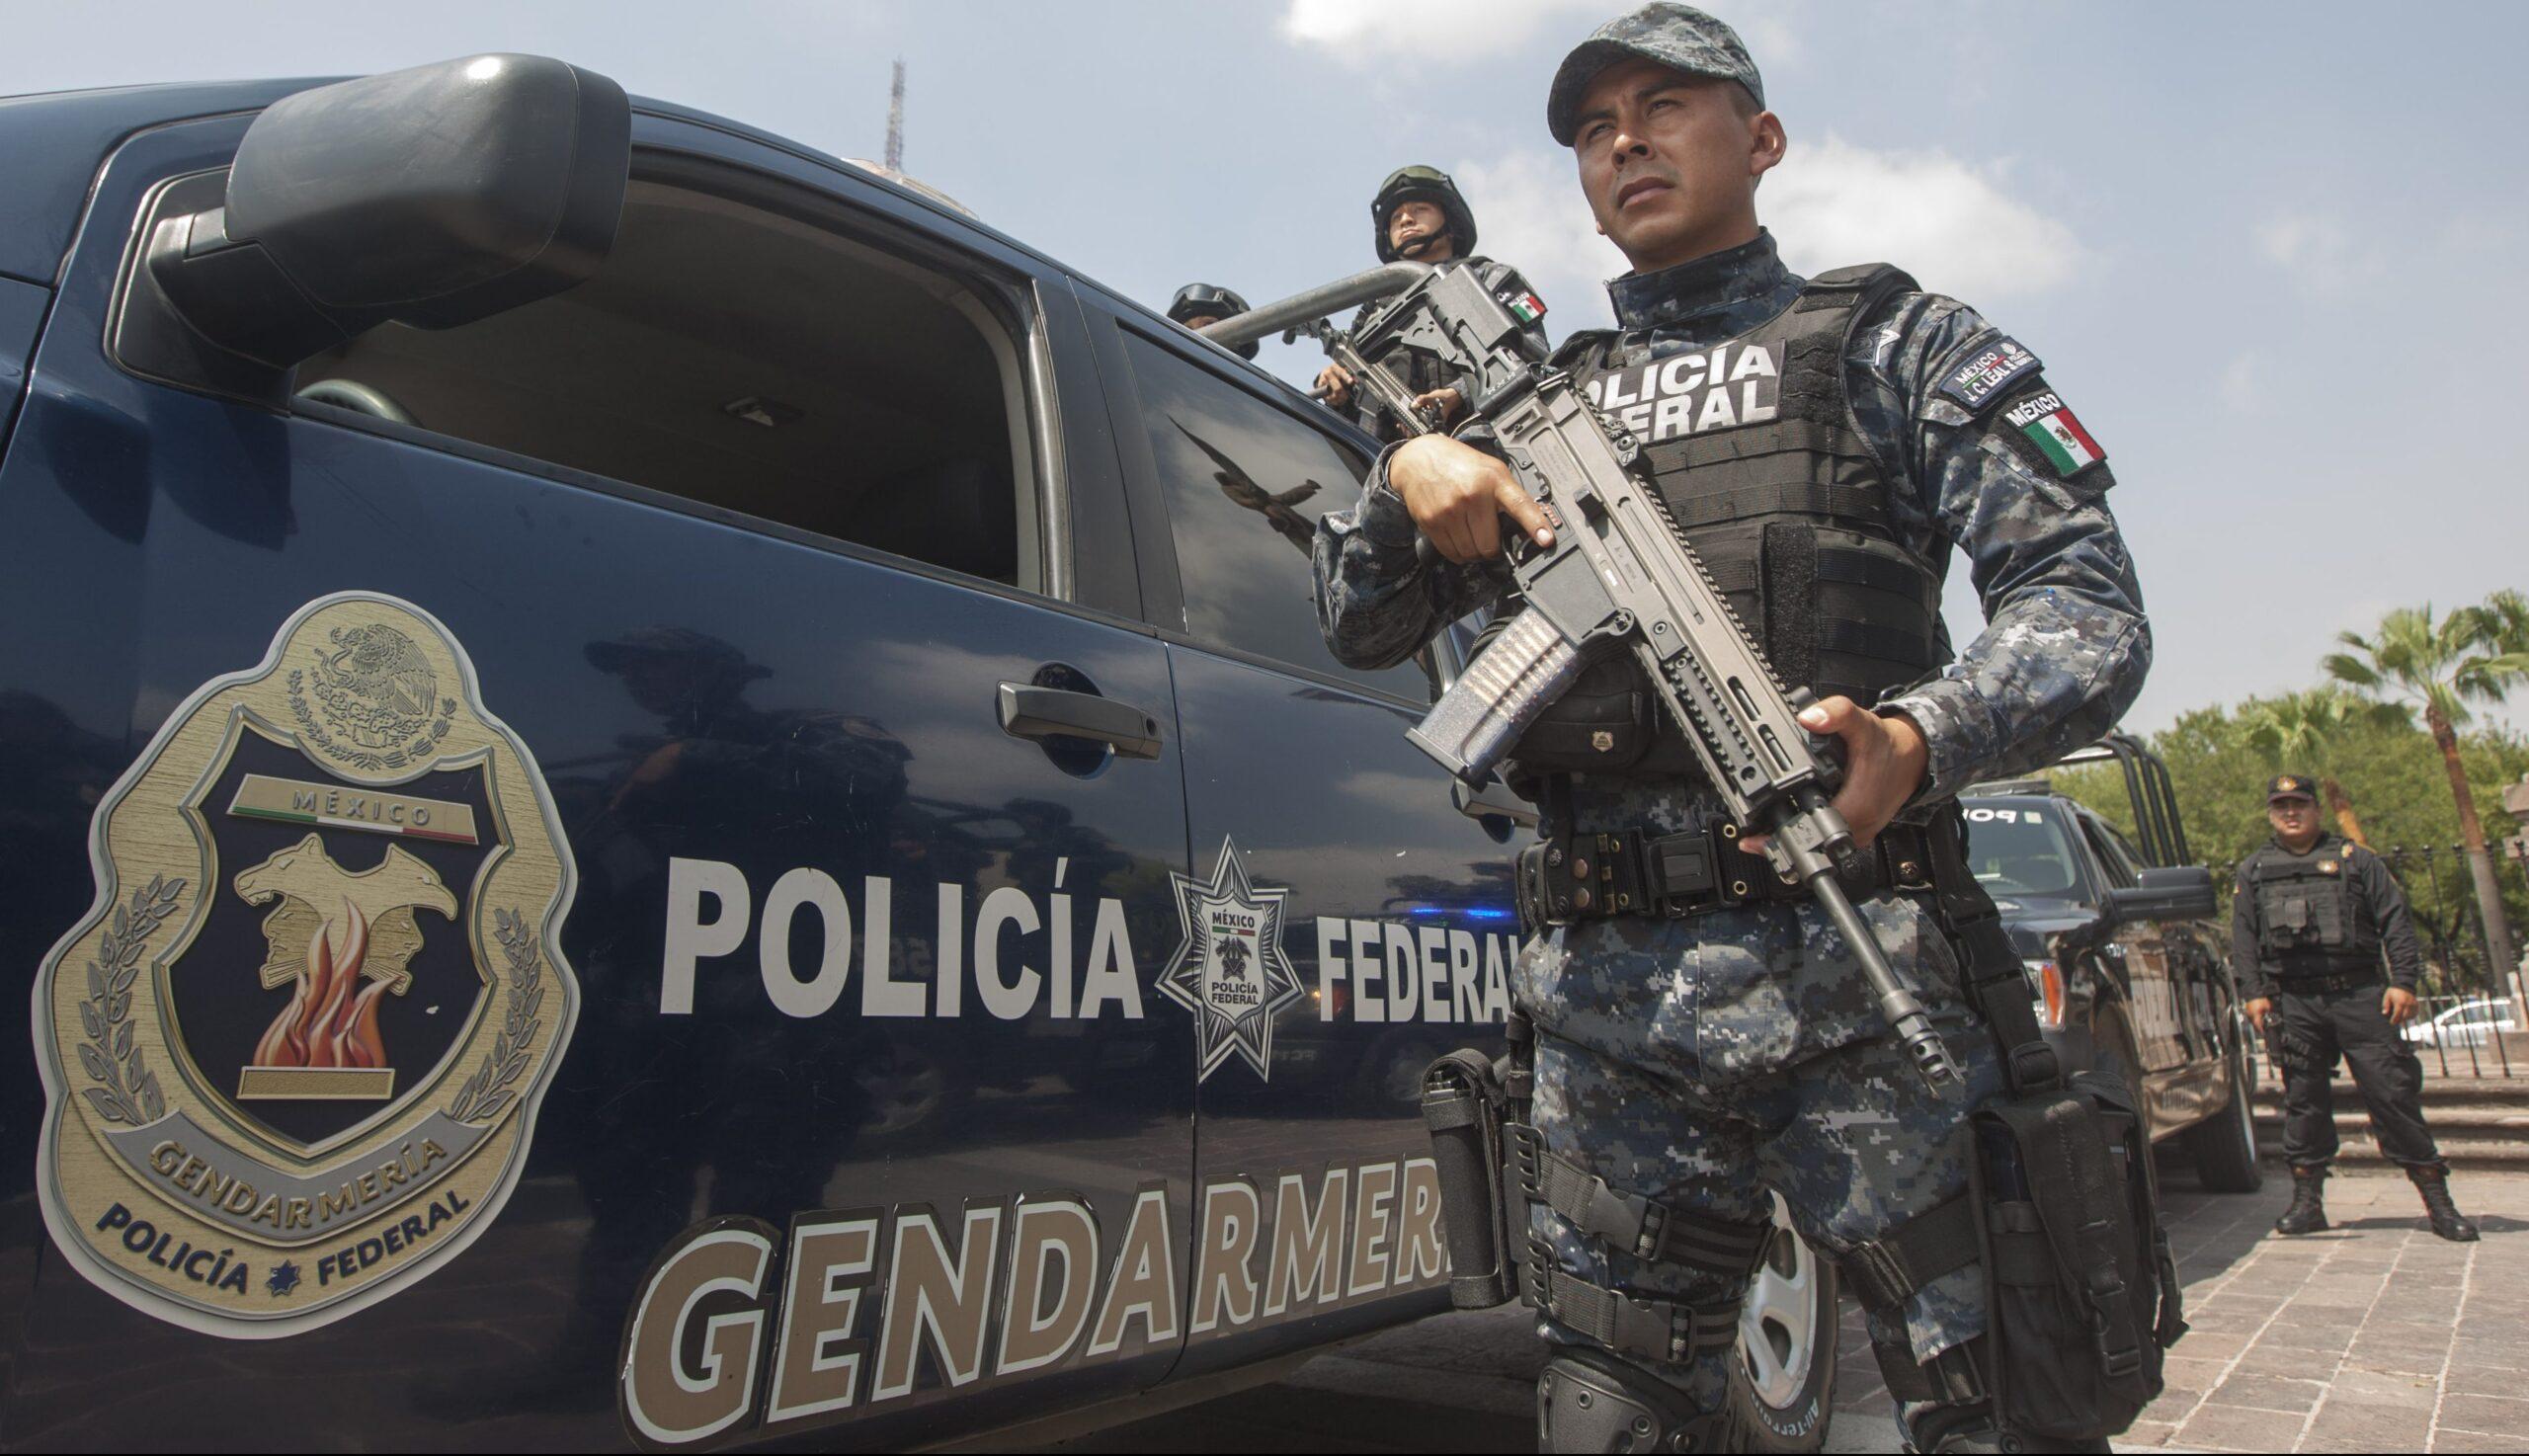 La Gendarmería no ayuda a disminuir los delitos, sus operativos son deficientes: ASF